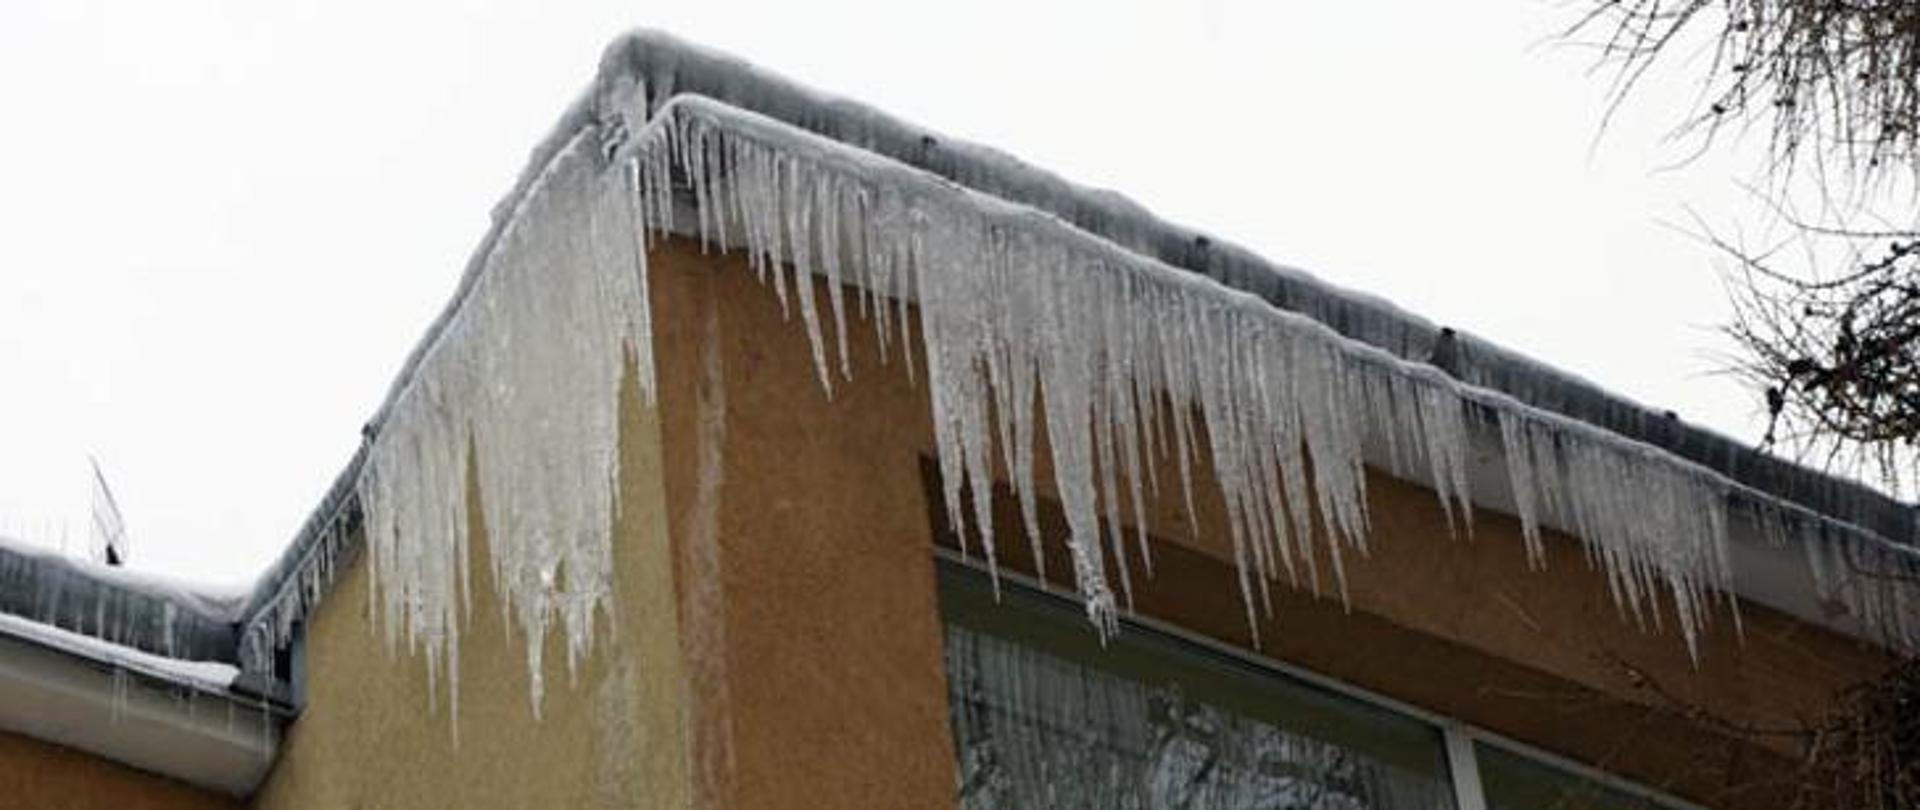 Obrazek przedstawia nawisy lodowe na dachu budynku.